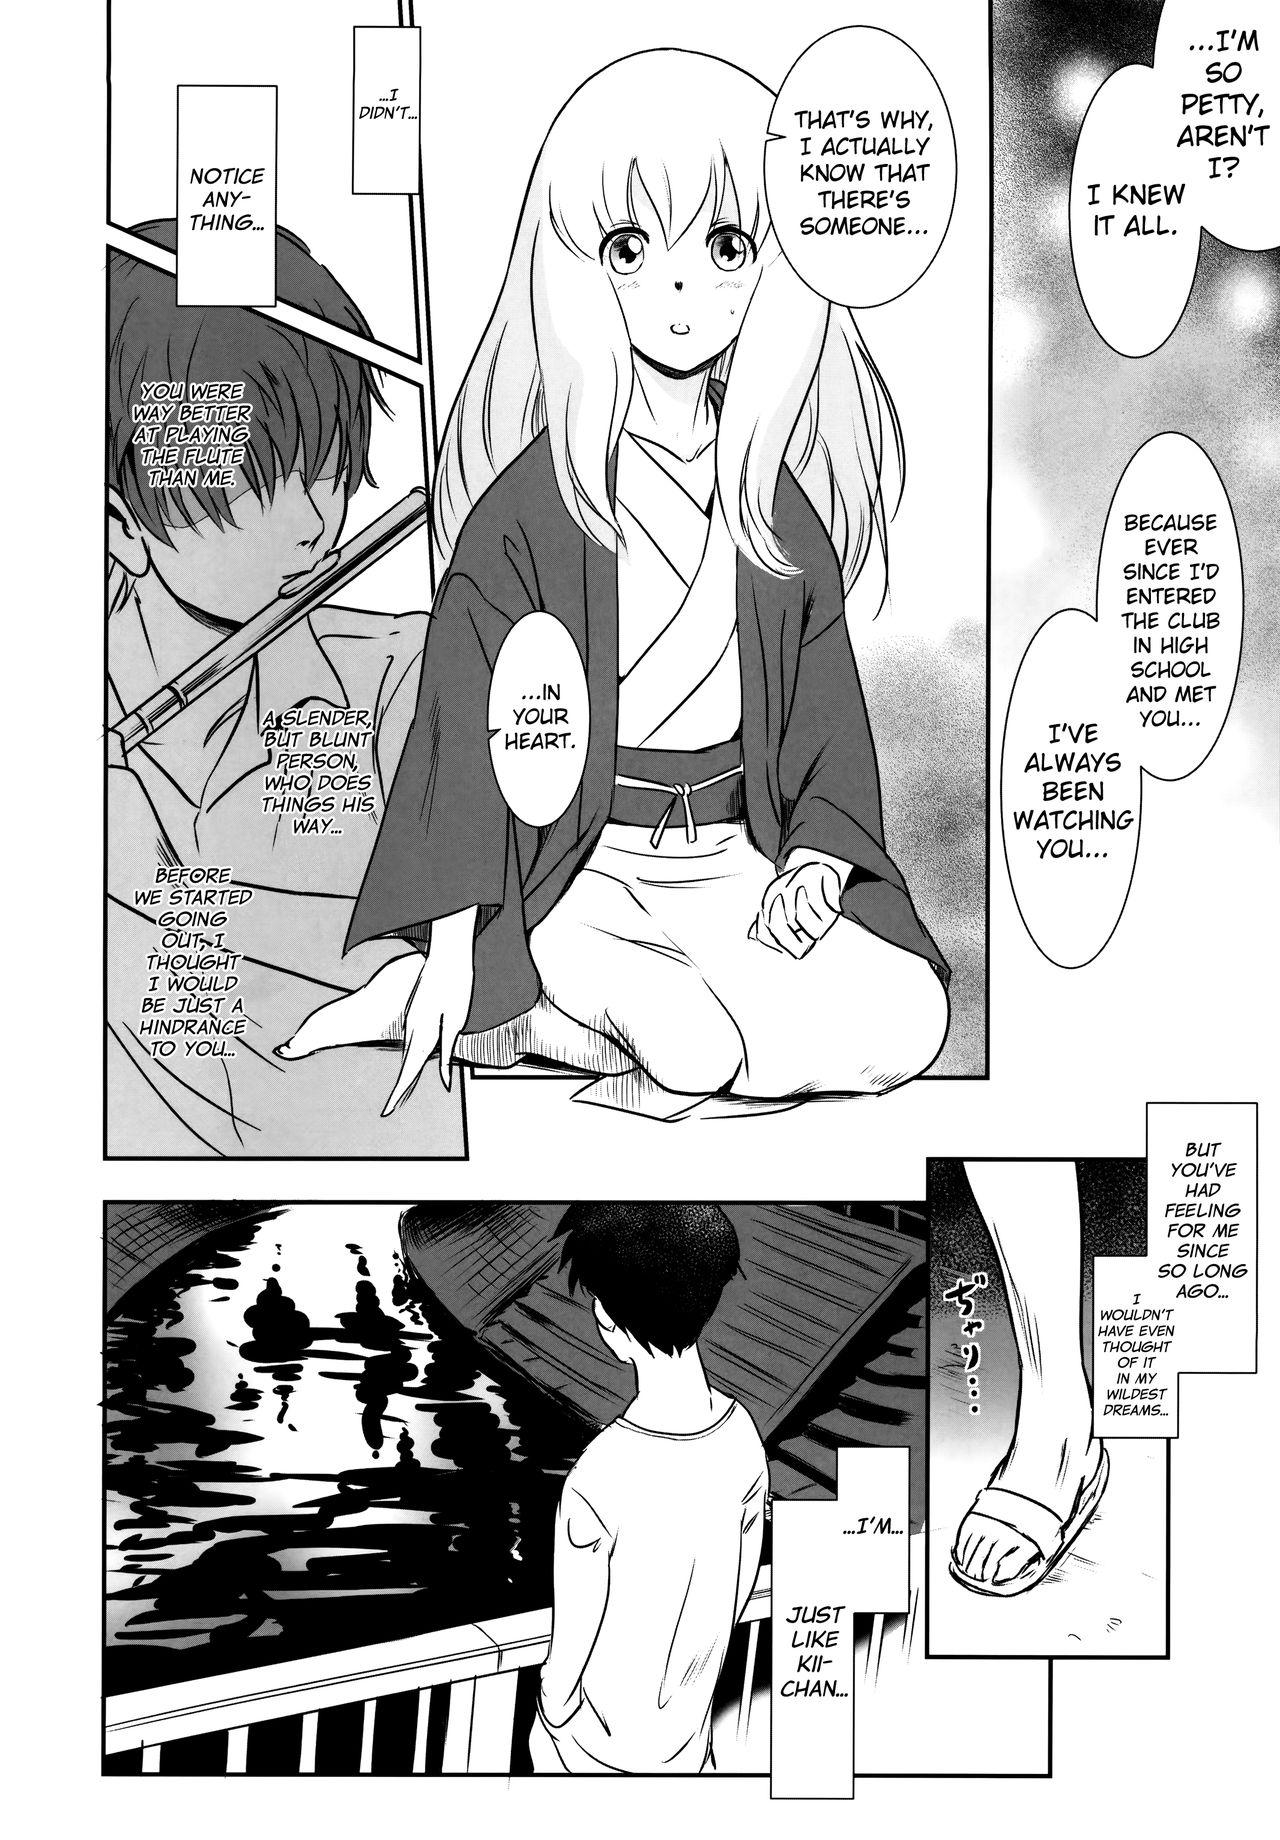 Story of the 'N' Situation - Situation#2 Kokoro Utsuri 11